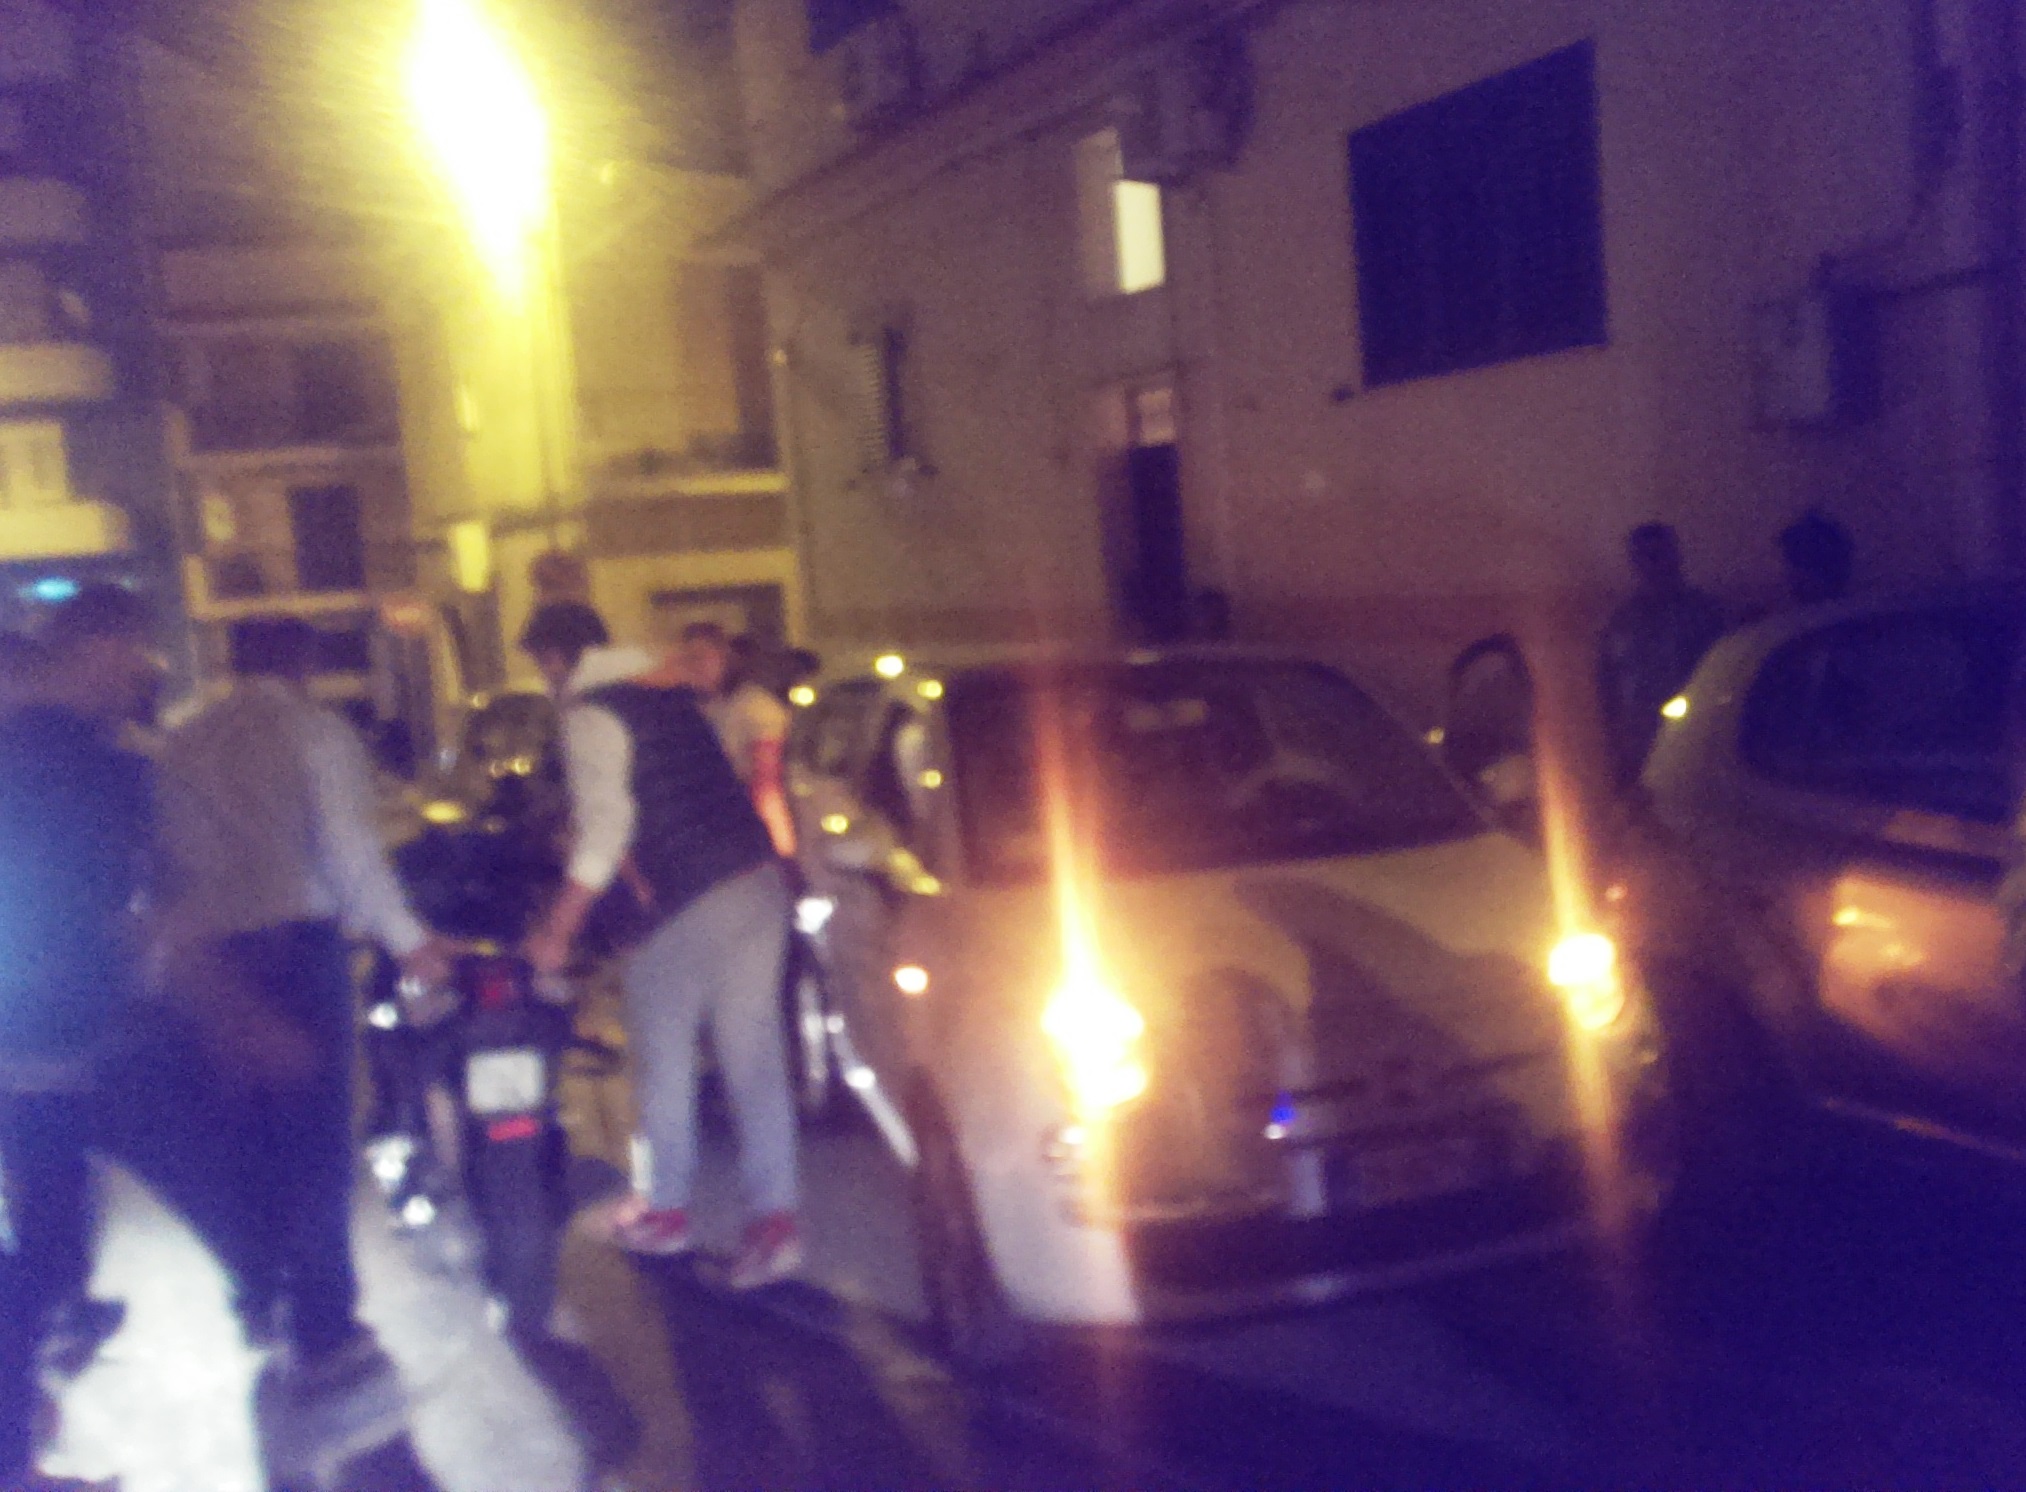  Impatto fra un auto e uno scooter fra via Croce e via Gaggini: due ragazzi finiscono in ospedale